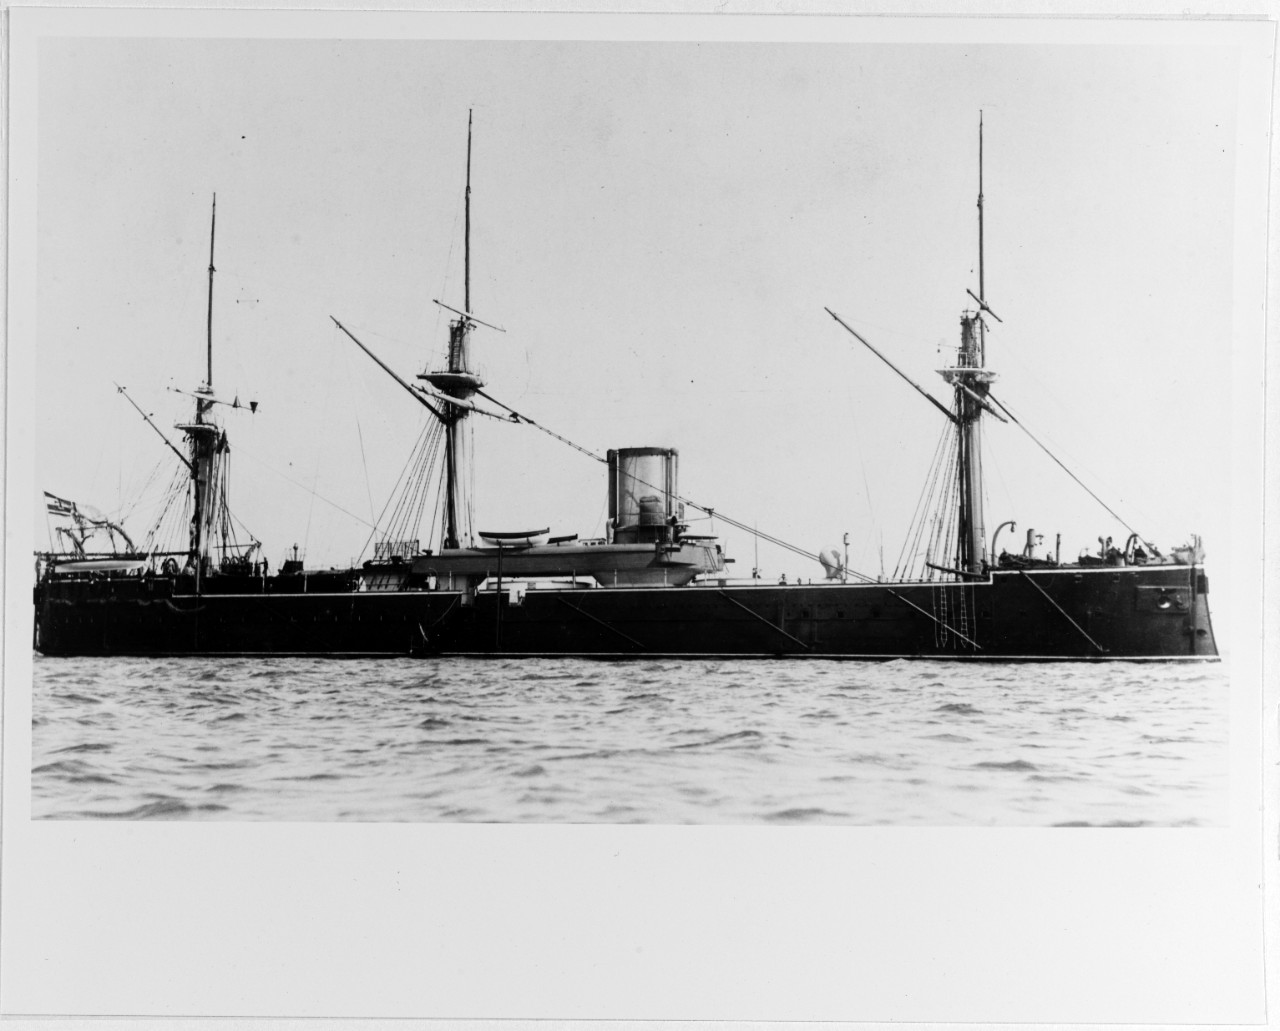 FRIEDRICH DER GROSSE (German Battleship, 1874 -1919)